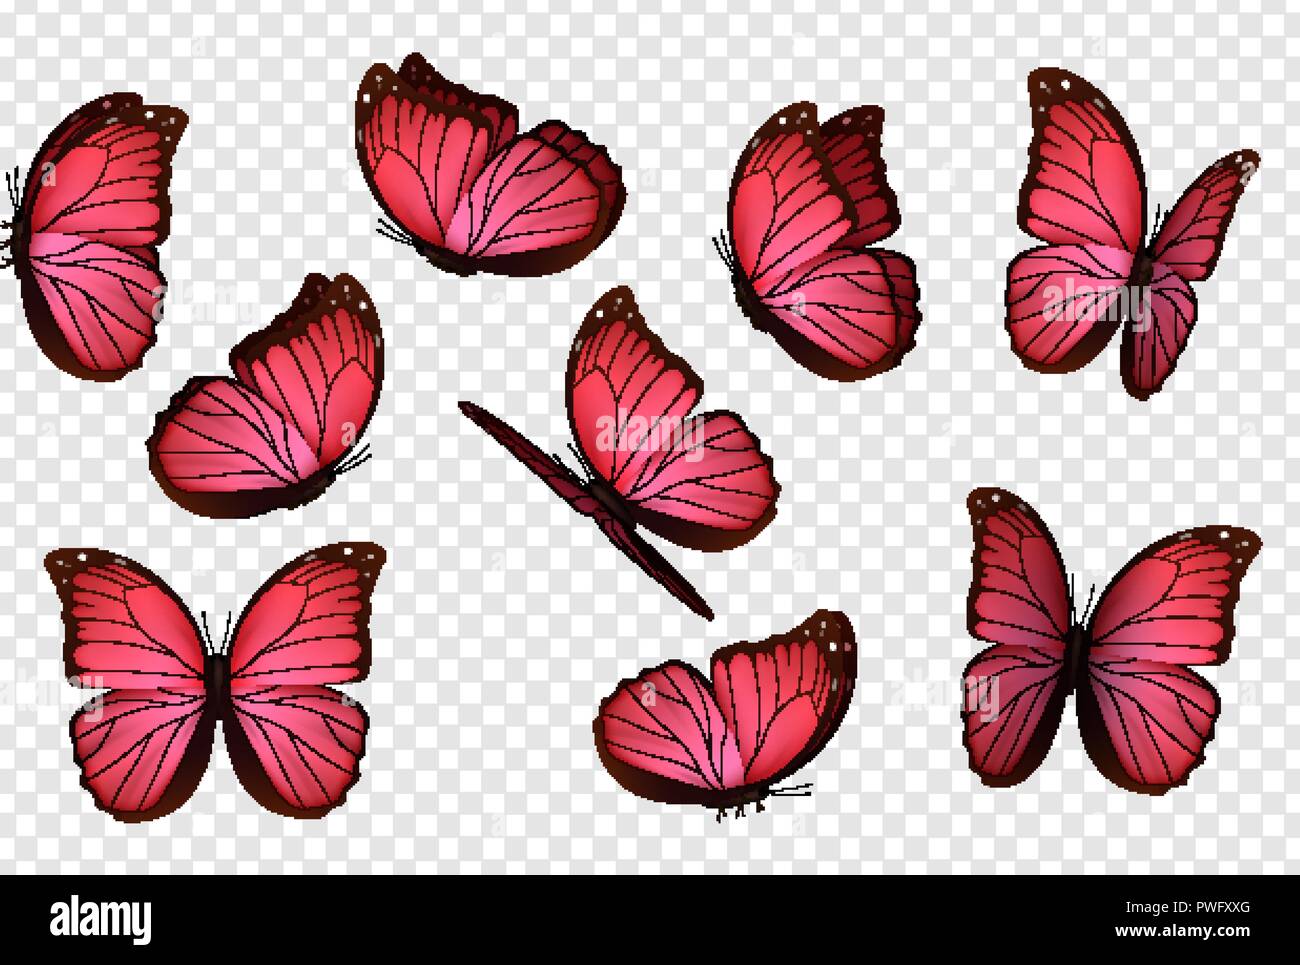 Hãy tận hưởng chuyến phiêu lưu đầy màu sắc với hình ảnh của những chú bướm hồng cực kỳ đáng yêu trên nền vật liệu vector. Để mọi thứ sáng tạo và đa dạng, bức tranh lấy cảm hứng từ hình ảnh thực tế giúp mang đến cho bạn trải nghiệm tràn đầy màu sắc trong từng chi tiết.